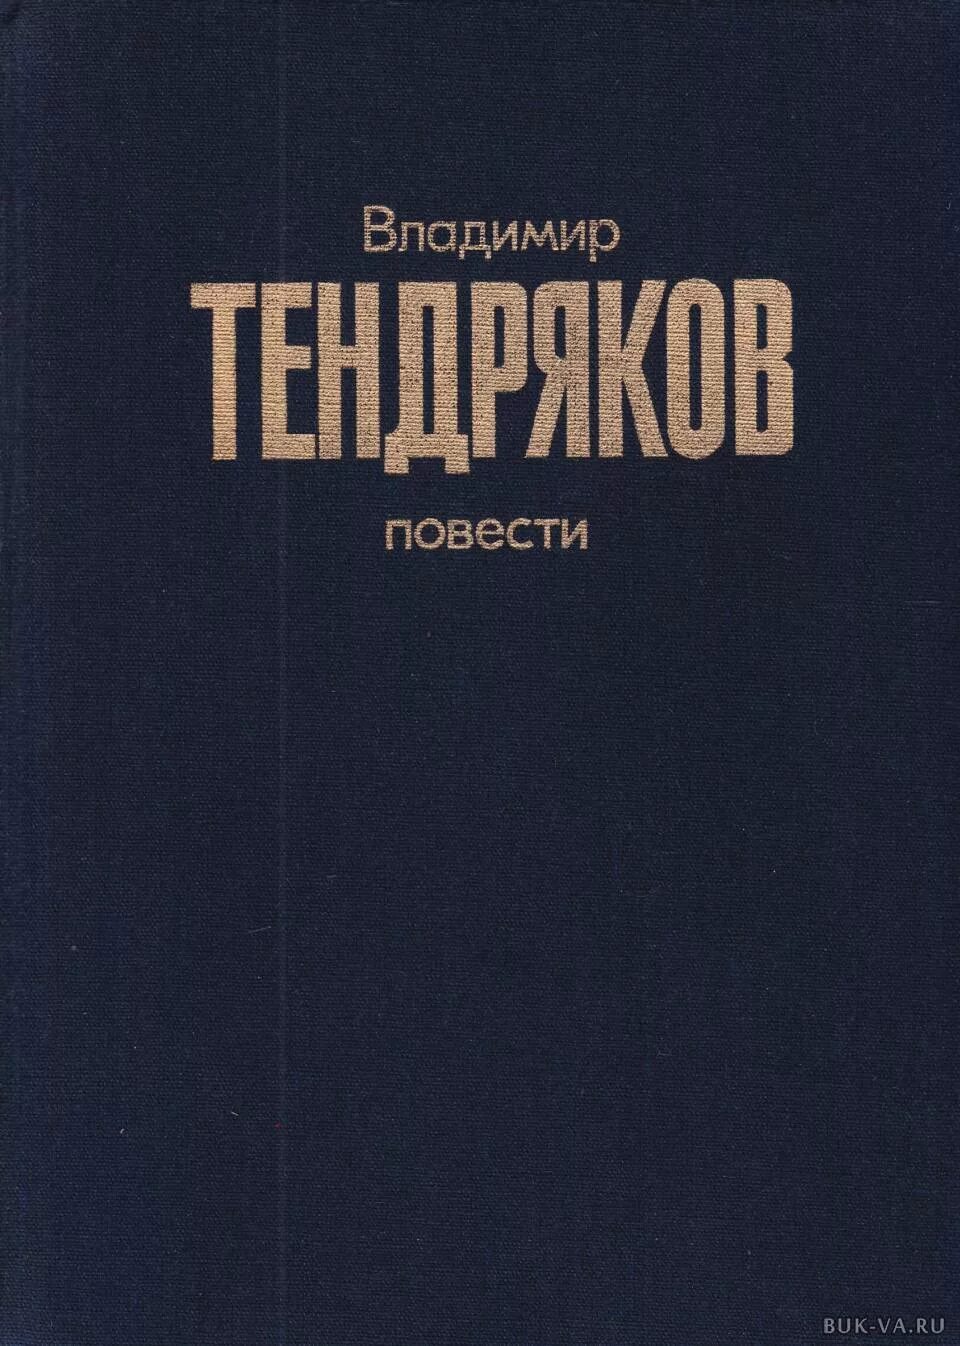 Книги издательства Советский писатель. В ф тендряков произведения